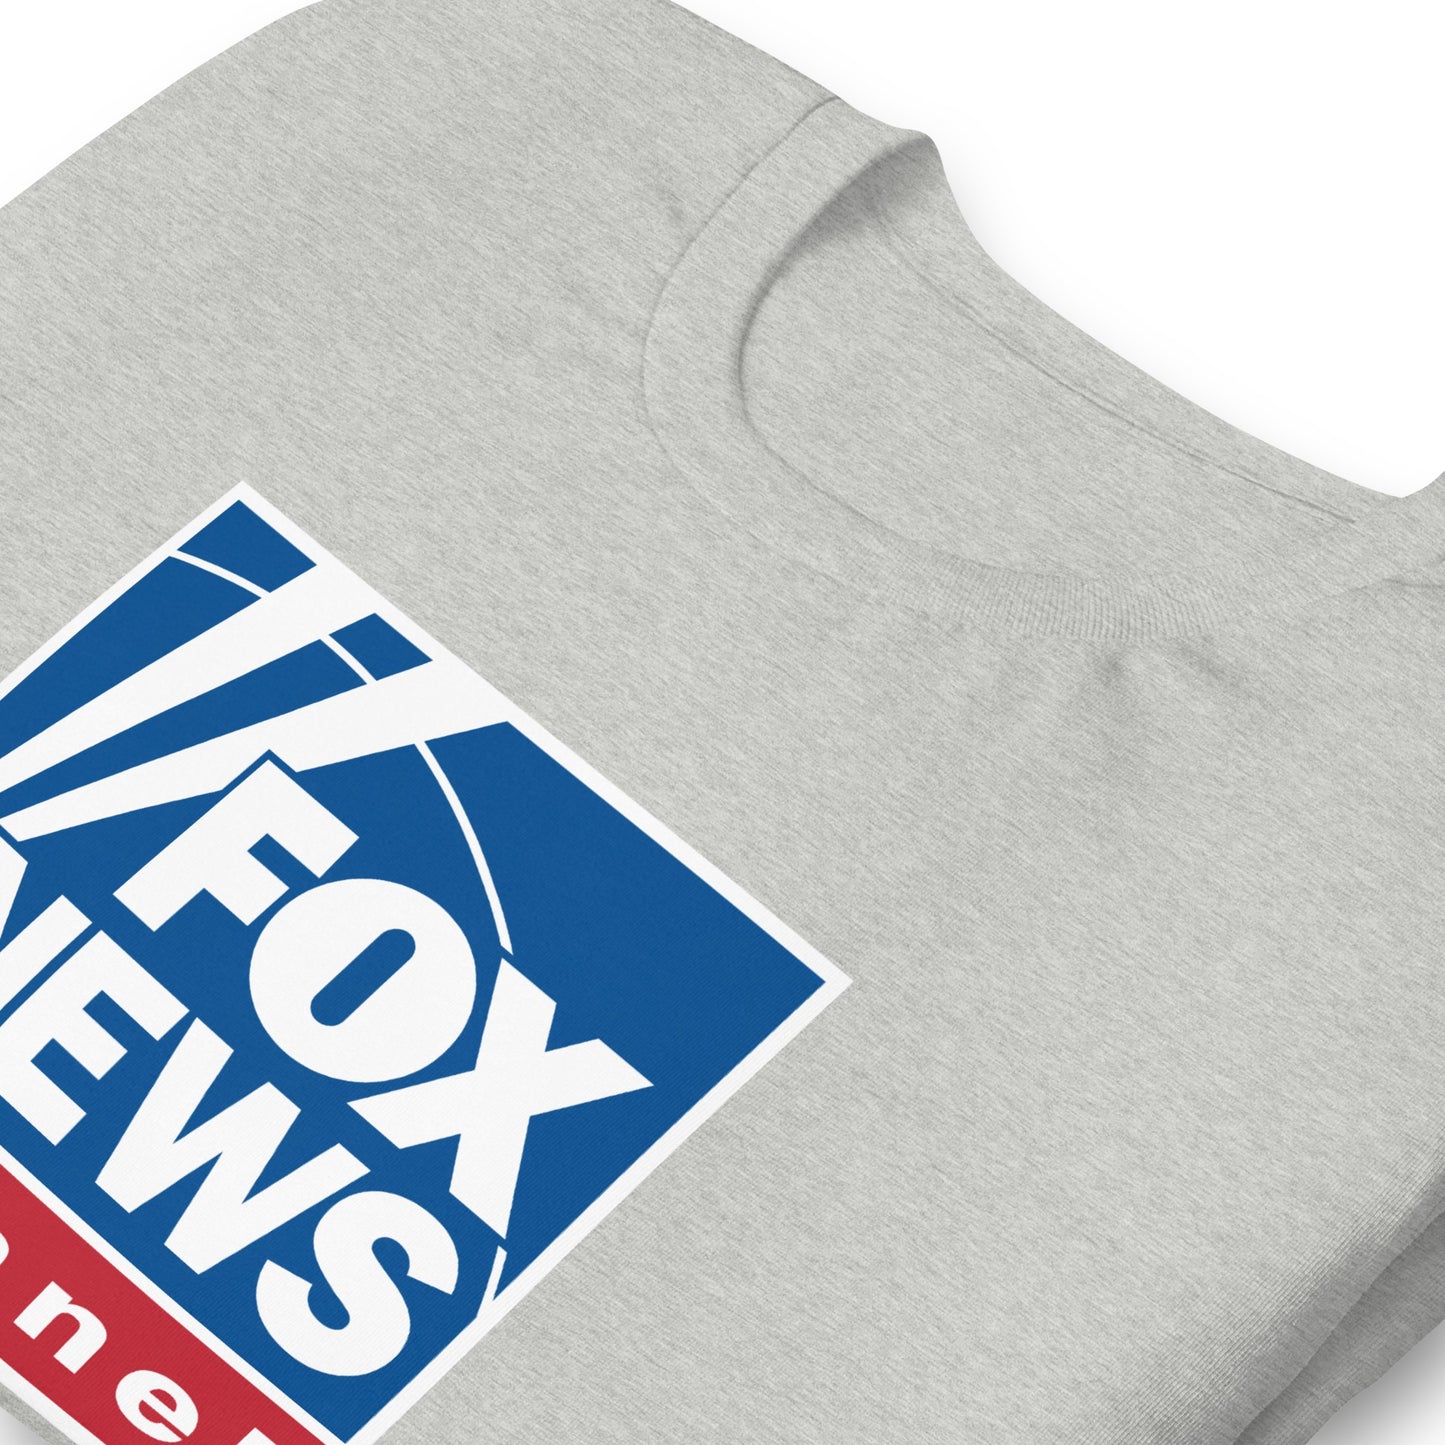 Fox News Logo T-Shirt